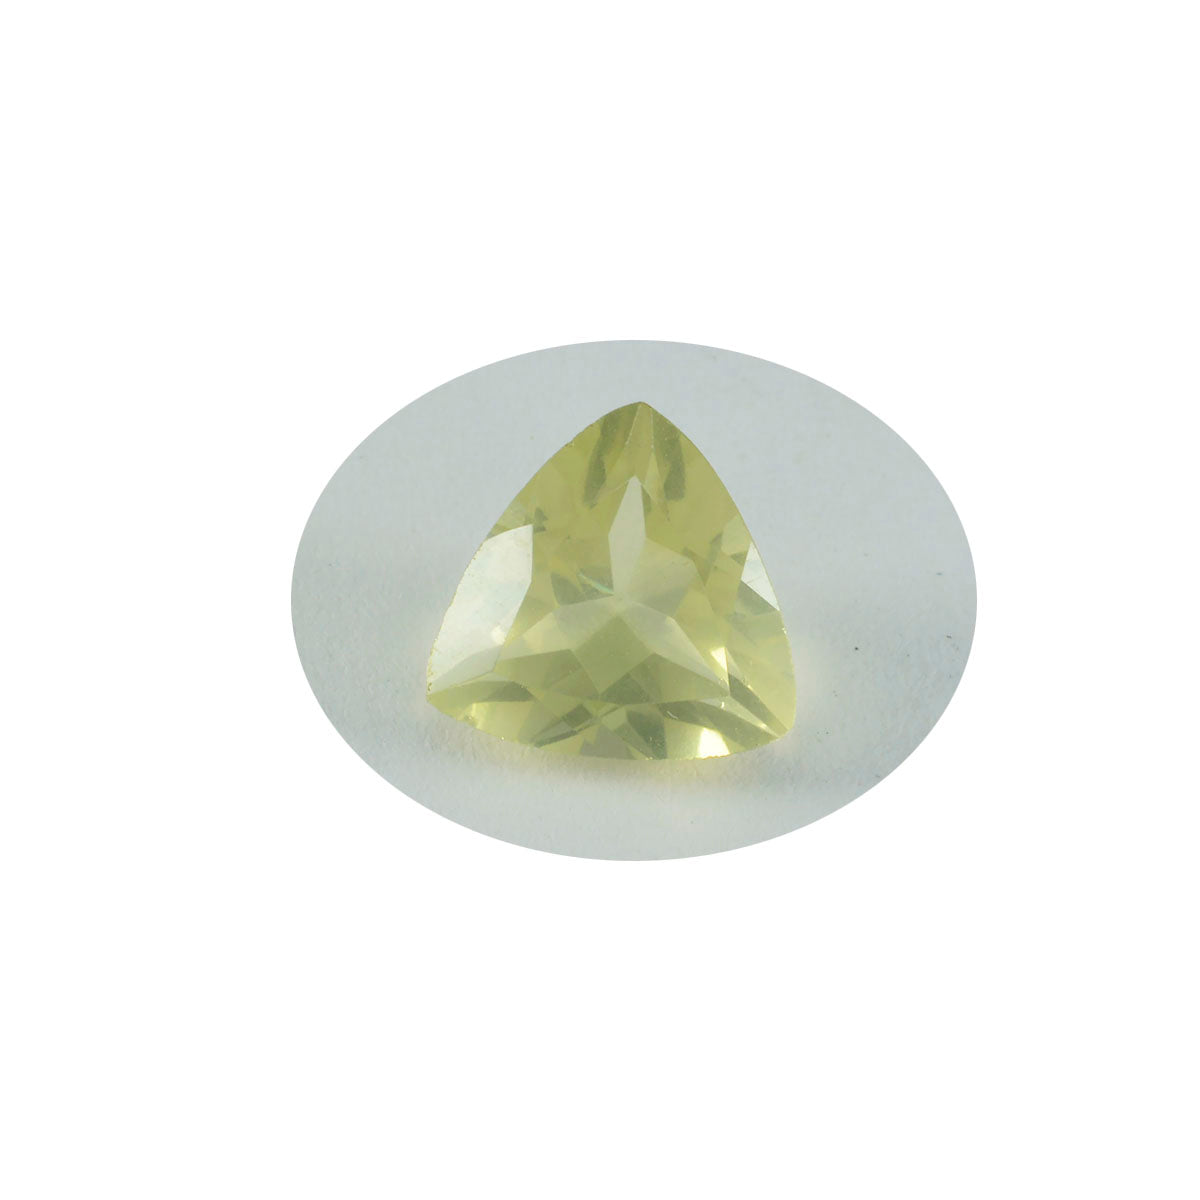 riyogems 1 шт., желтый лимонный кварц, ограненный 10x10 мм, форма триллиона, отличное качество, свободный драгоценный камень